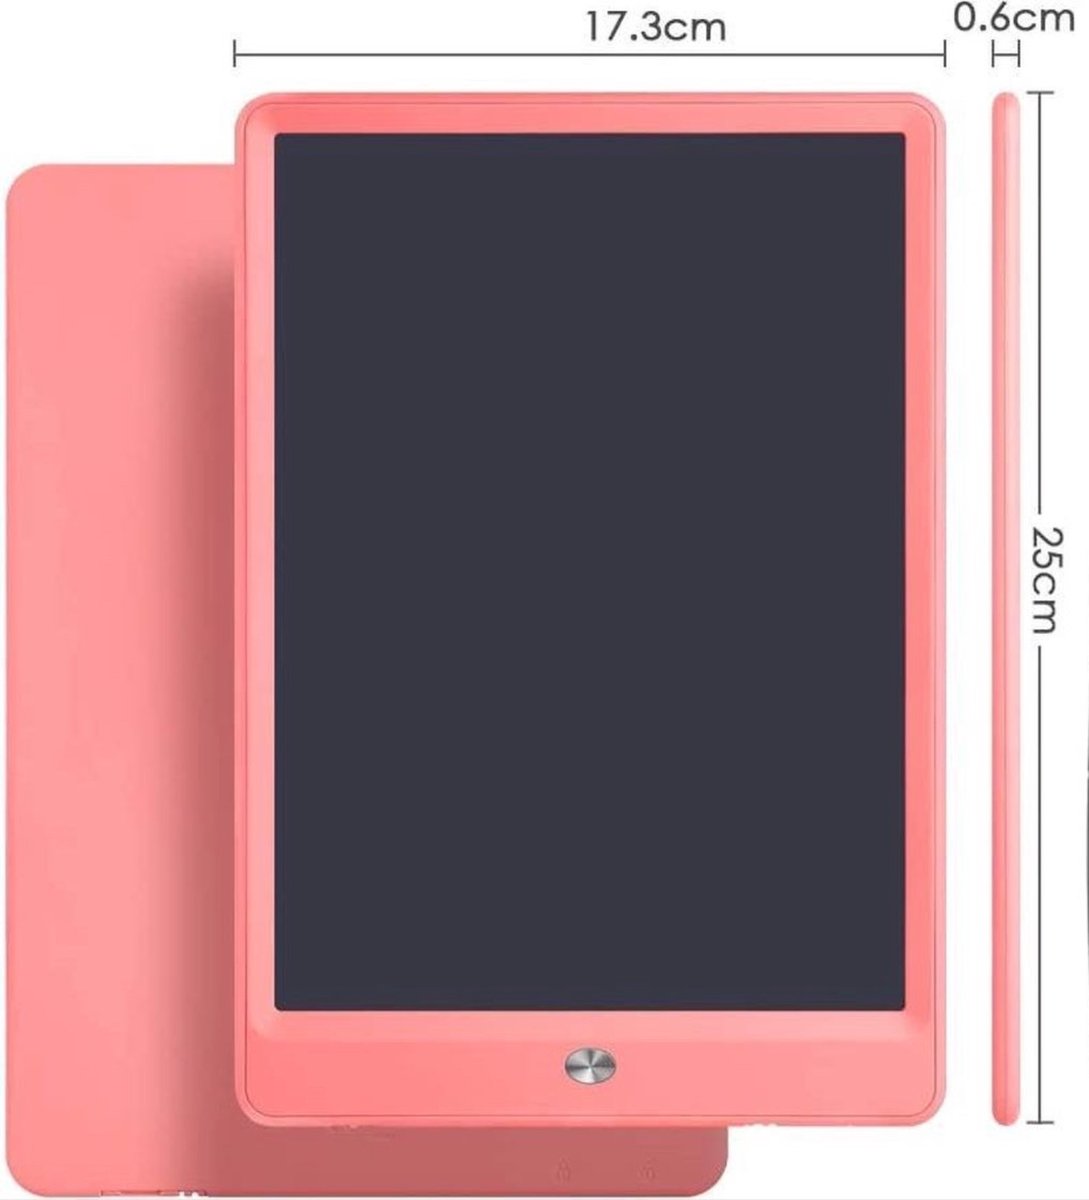 CHPN - Digitaal tekenen - Tekentablet - Tekenen - Lcd-schrijfbord - Roze - Tekenen op een tablet - Speciaal voor kids - Verjaardagscadeau - Kinderfeestje